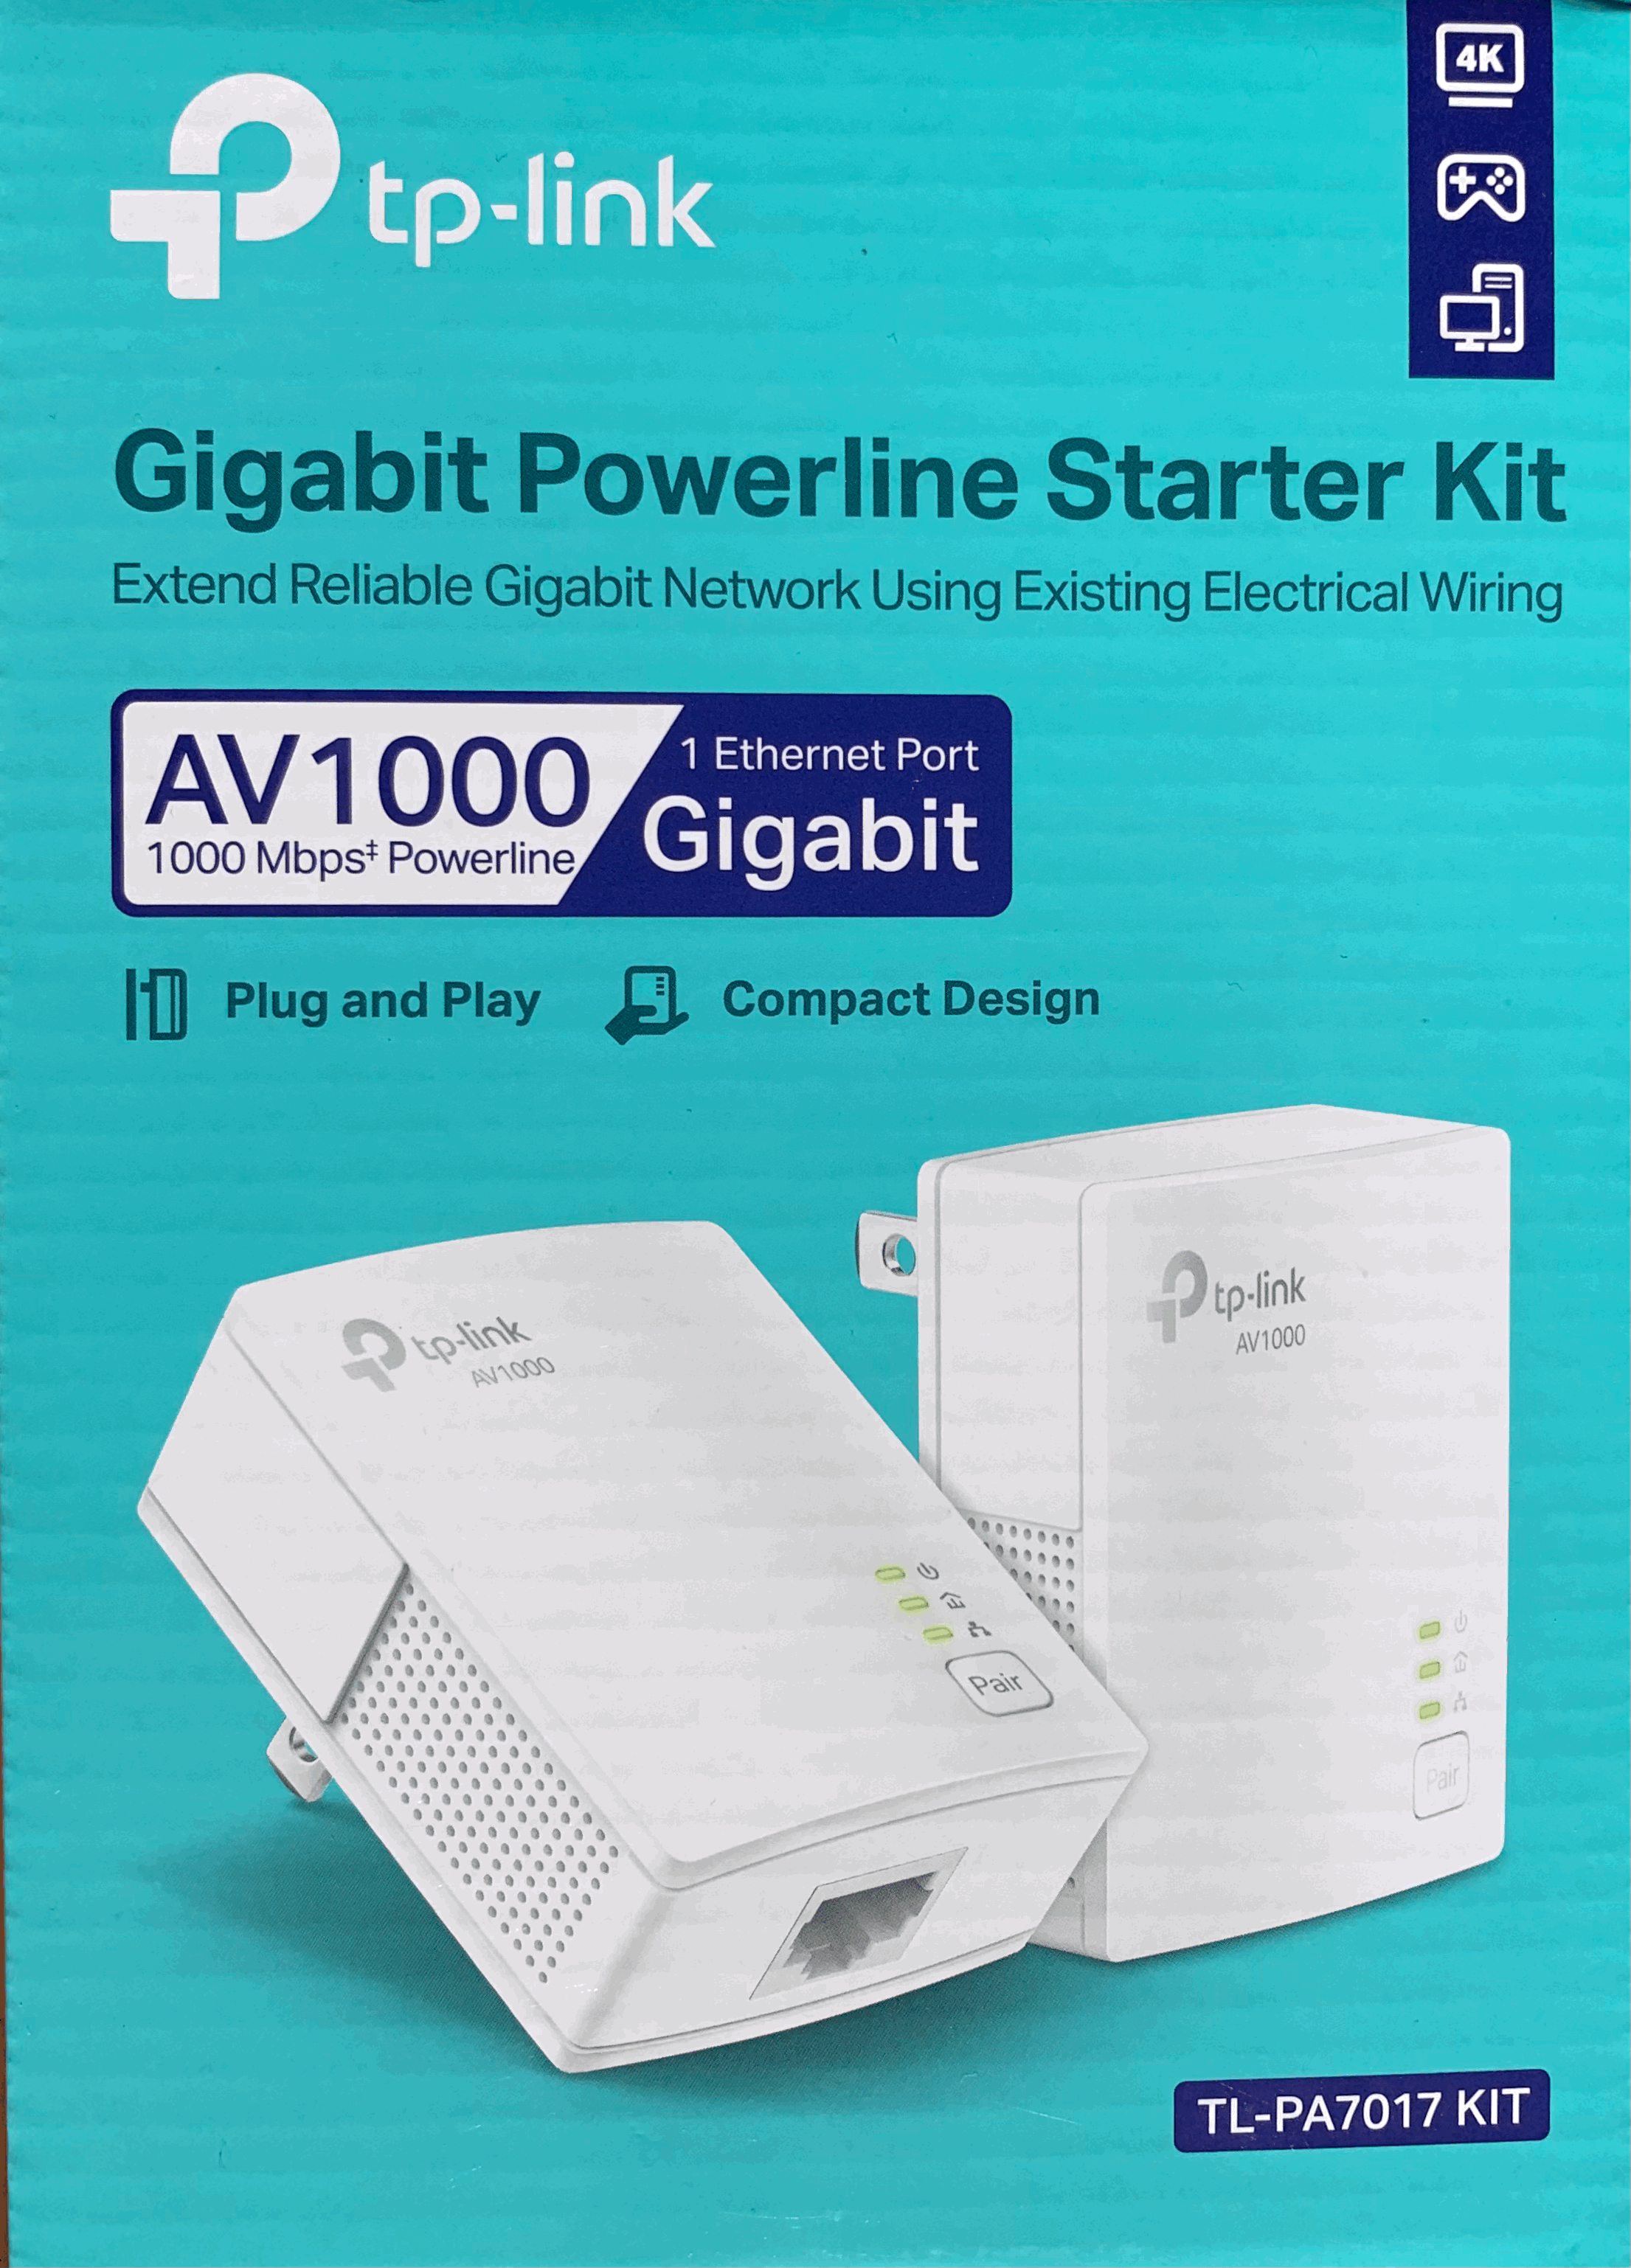 Review of the tp-link AV1000 Gigabit Powerline Starter Kit